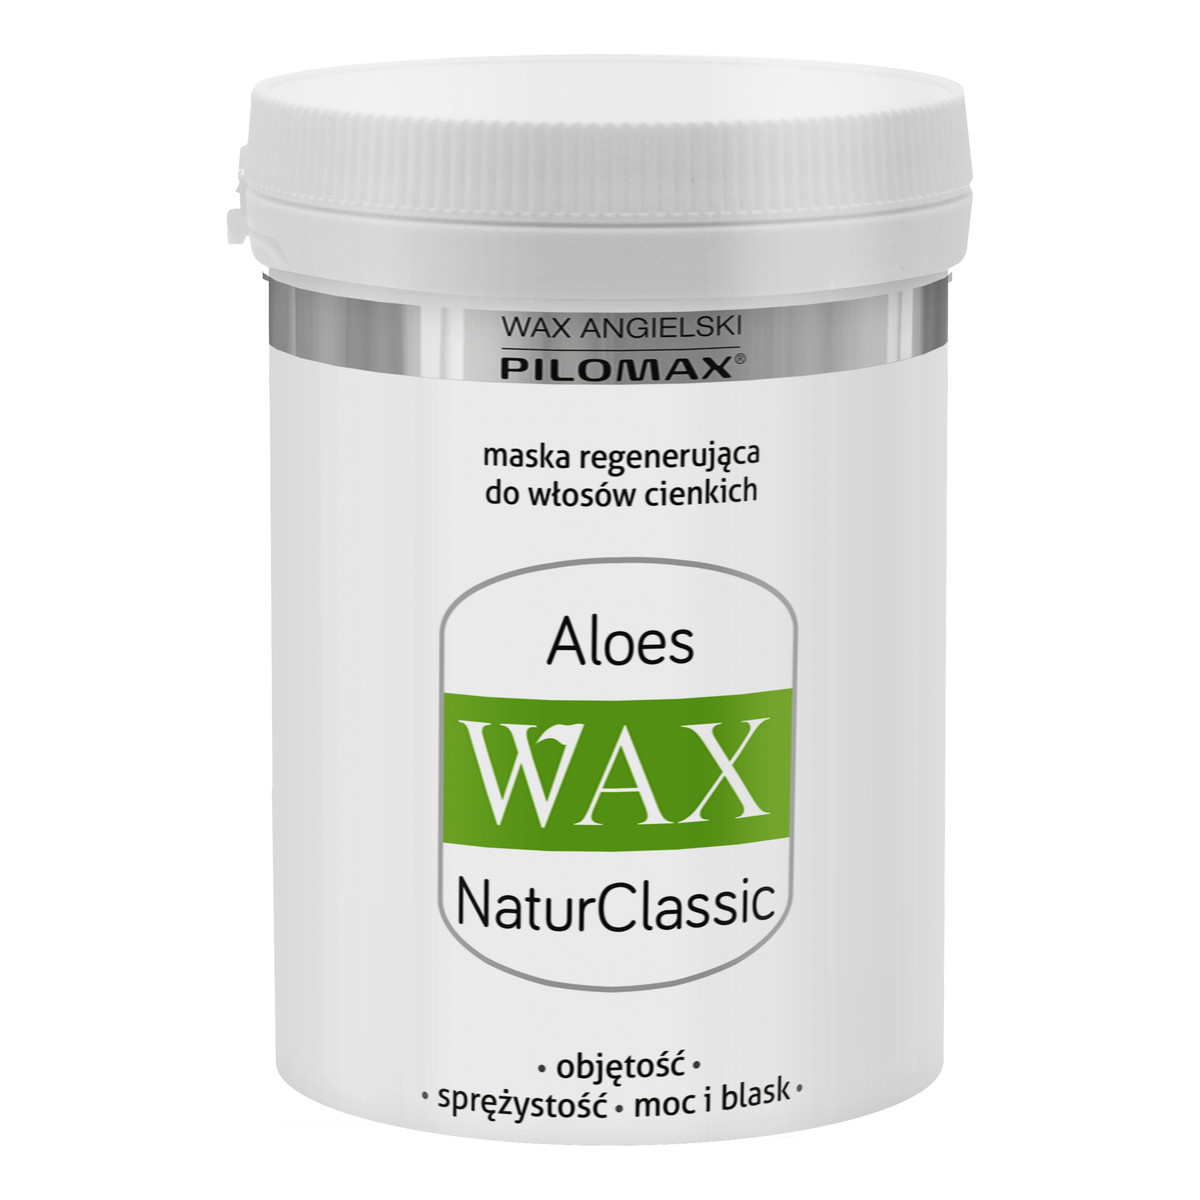 Pilomax Wax Natur Classic Aloes Maska Regenerująca Do Włosów Cienkich 240ml